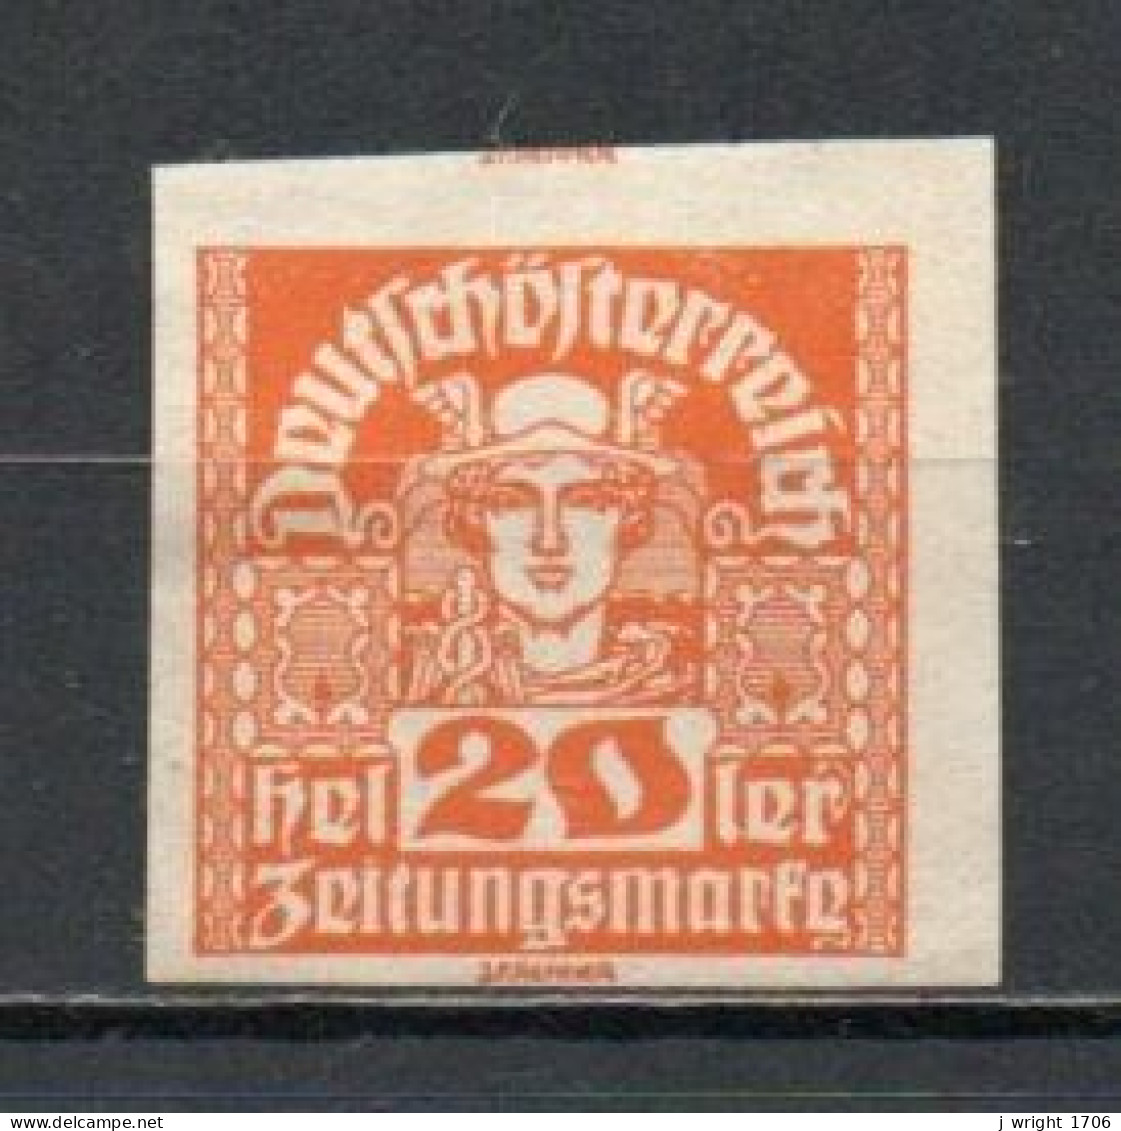 Austria, 1921, Mercury/White Paper, 20h, UNUSED NO GUM - Periódicos